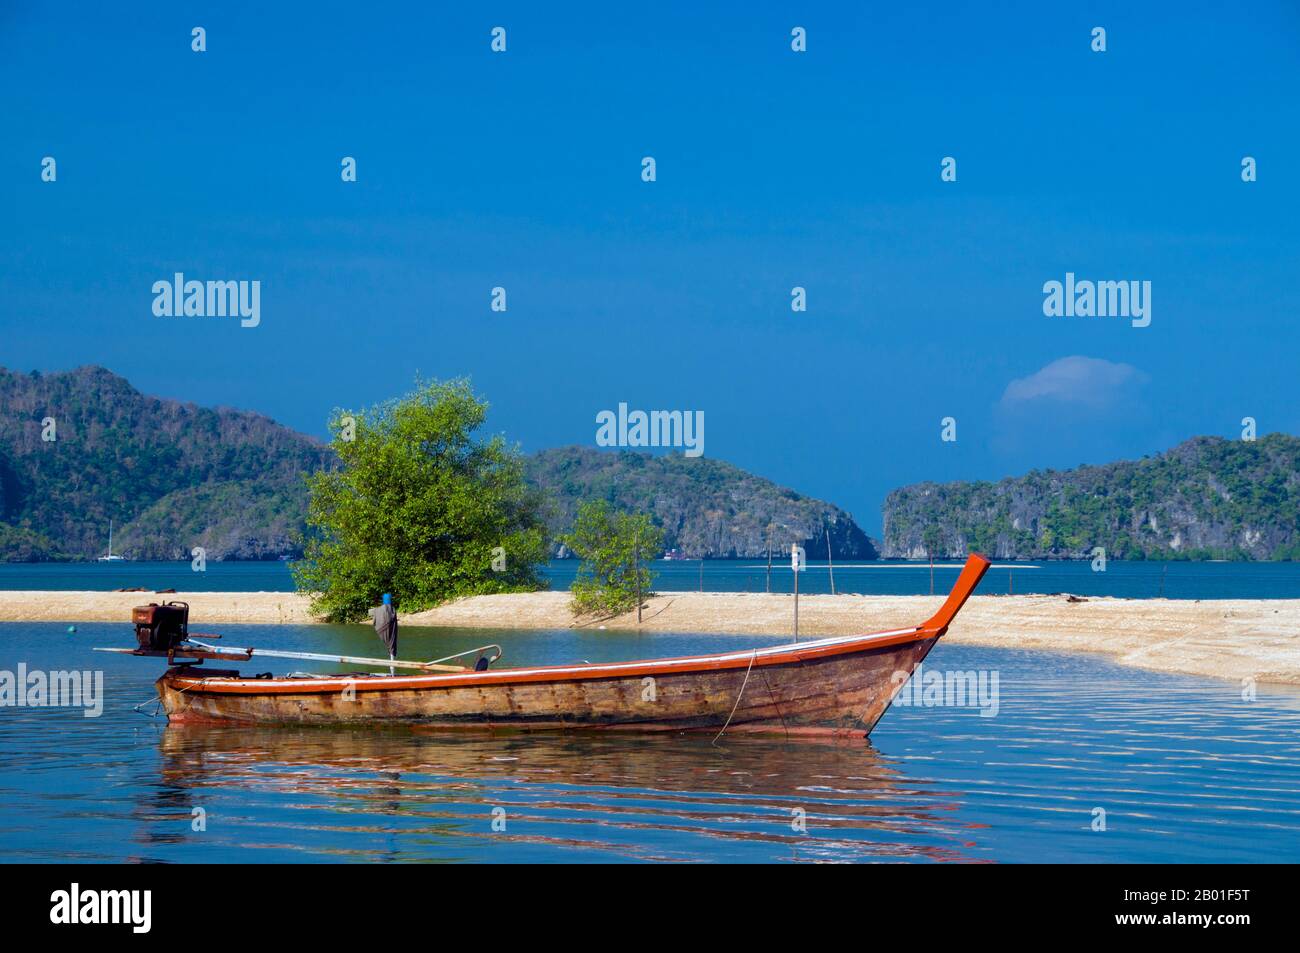 Thaïlande: Pak Bara, province de Satun, sud de la Thaïlande. Pak Bara est une petite ville balnéaire et un village de pêcheurs à environ 60km (37 milles) au nord-ouest de la capitale provinciale, Satun. Bien que moins une destination à part entière qu'un point de départ pour les visites au parc national marin de Mu Ko Phetra et au parc national marin de Ko Tarutao. Banque D'Images